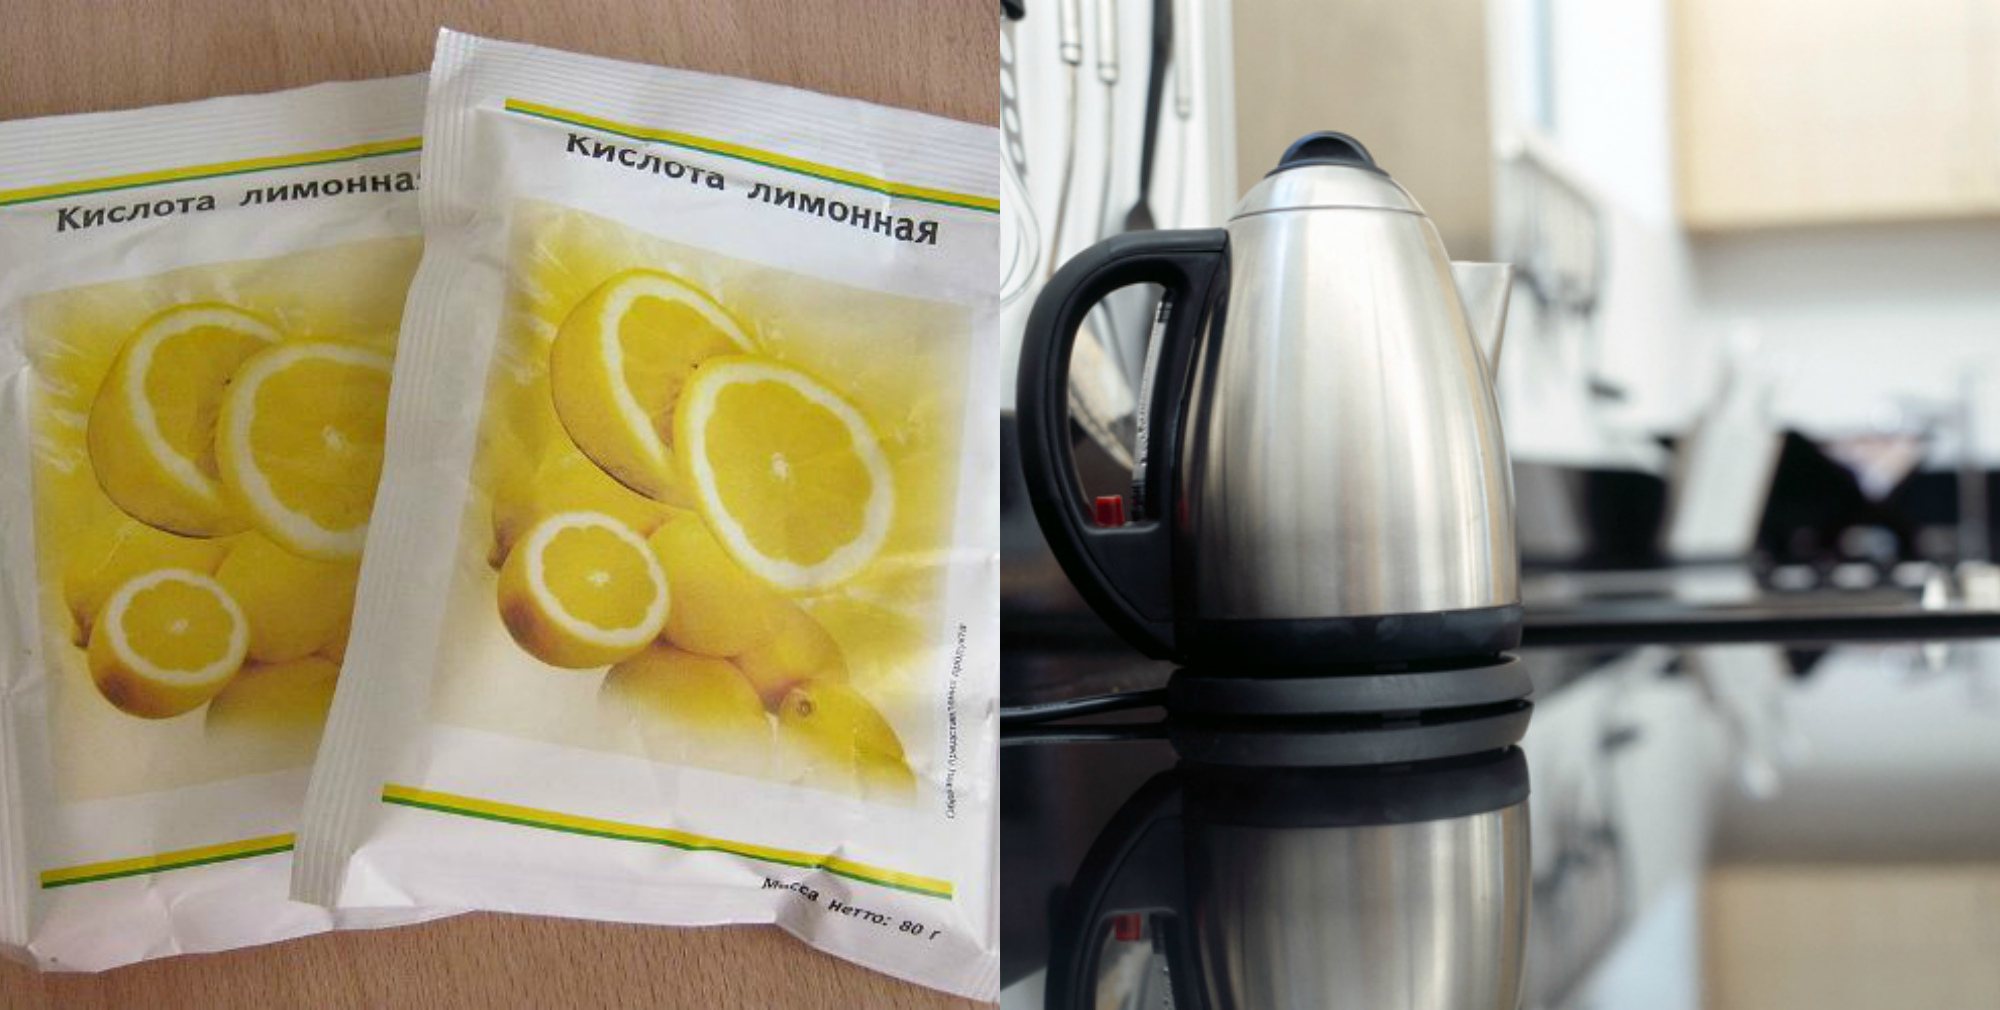 Для очистки чайника от накипи. Лимонная кислота от накипи в чайнике электрическом. Накипь лимонная кислота электрический чайник. Чистка чайника лимонной кислотой. Накипь в чайнике лимонной кислотой.